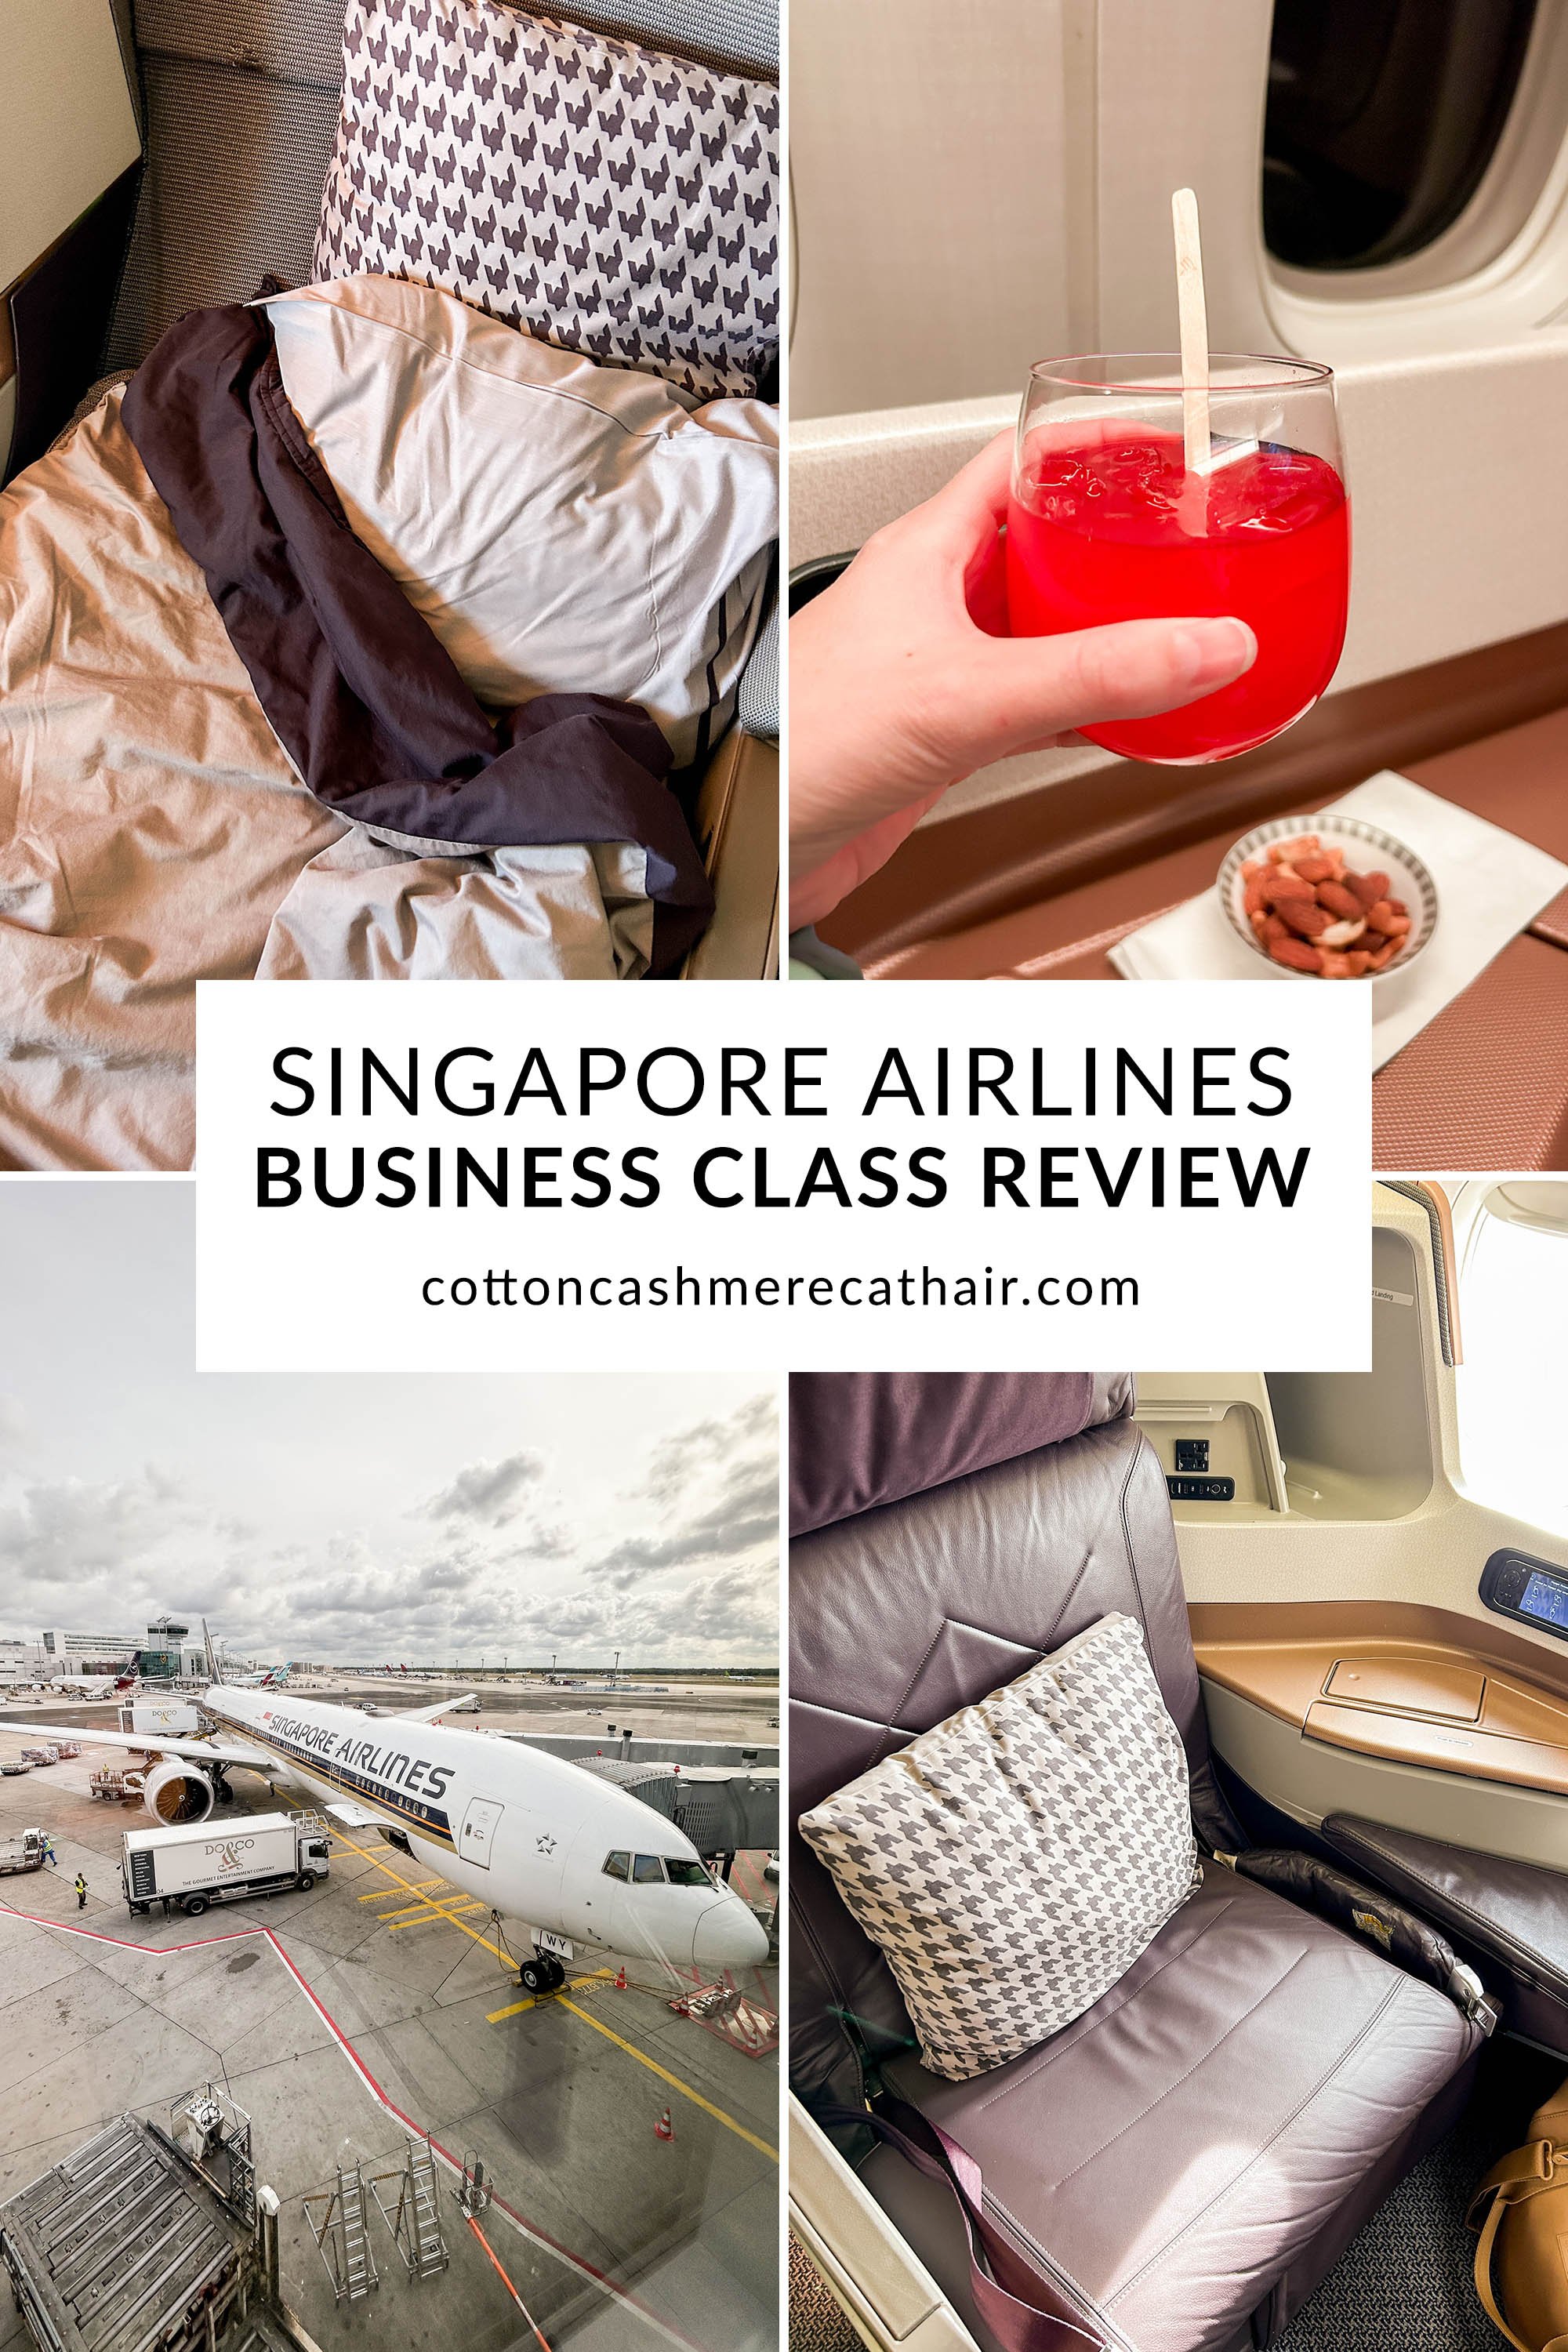 https://images.squarespace-cdn.com/content/v1/551c15cae4b07646122e7048/ca9108e3-edd0-4190-9357-03cd47fa69de/Singapore+Airlines+Business+Class+Review%3A+JFK+FRA+777+300-ER+%7C+Cotton+Cashmere+Cat+Hair